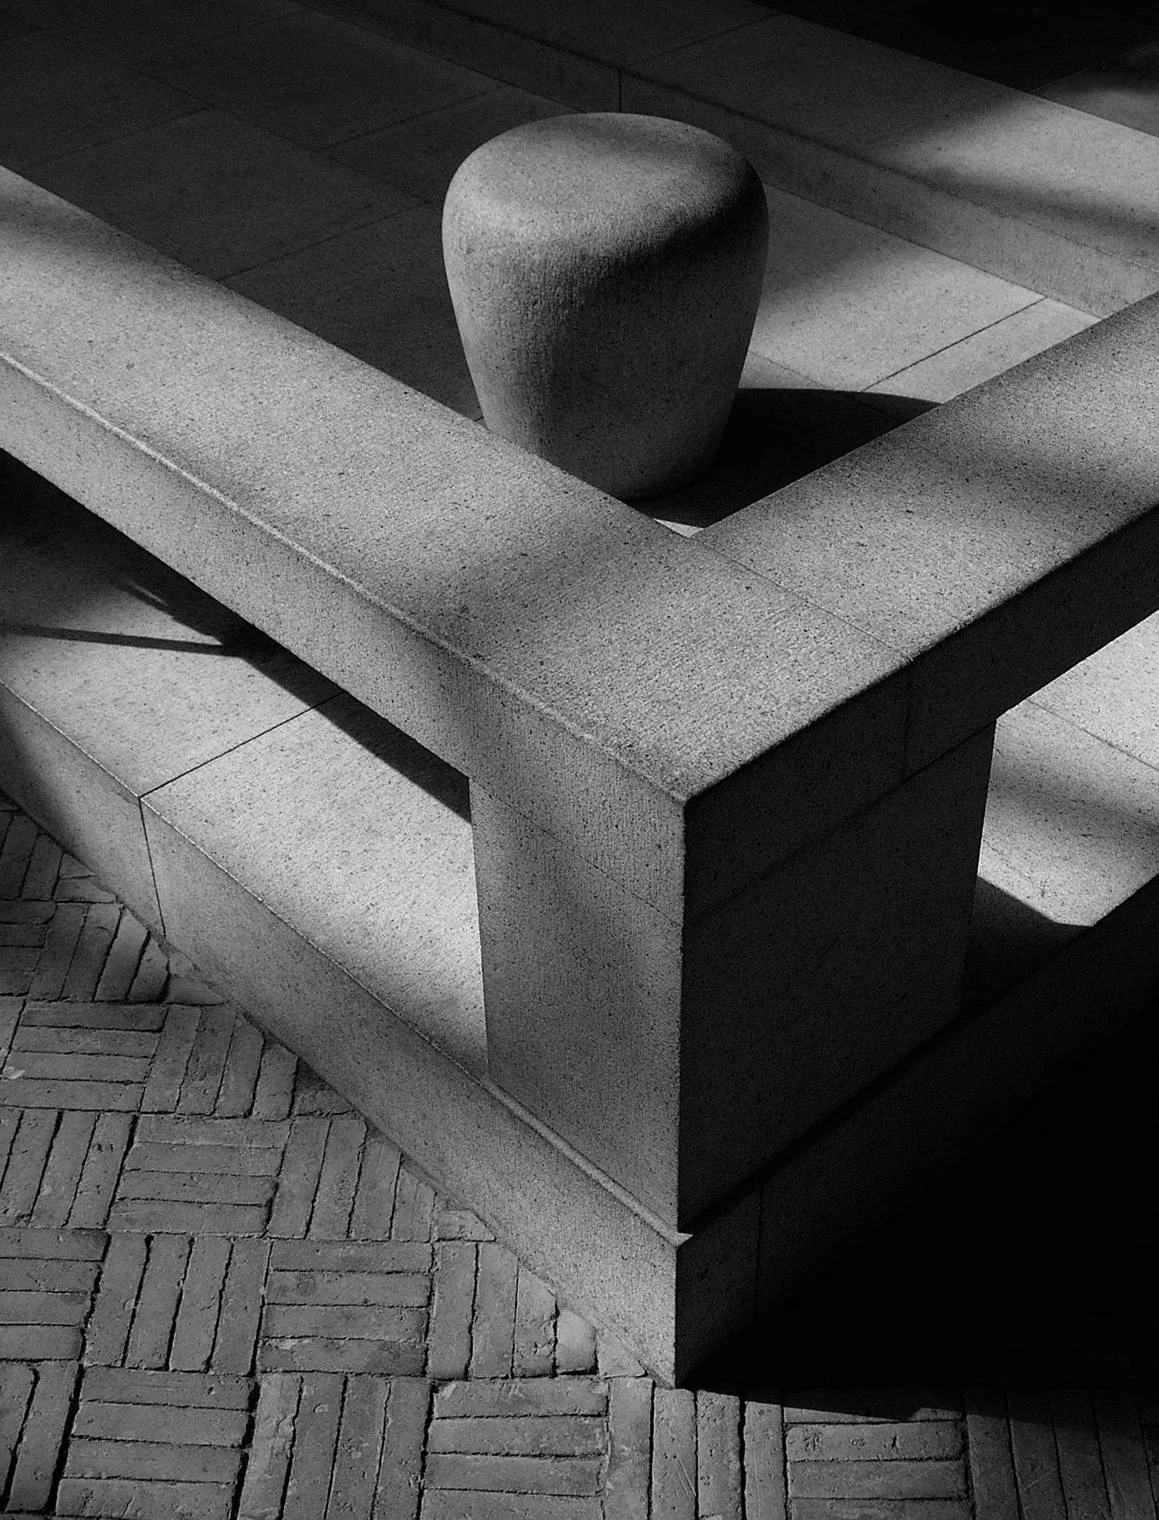 granite seat and rail, astor court, metropolitan museum, new york